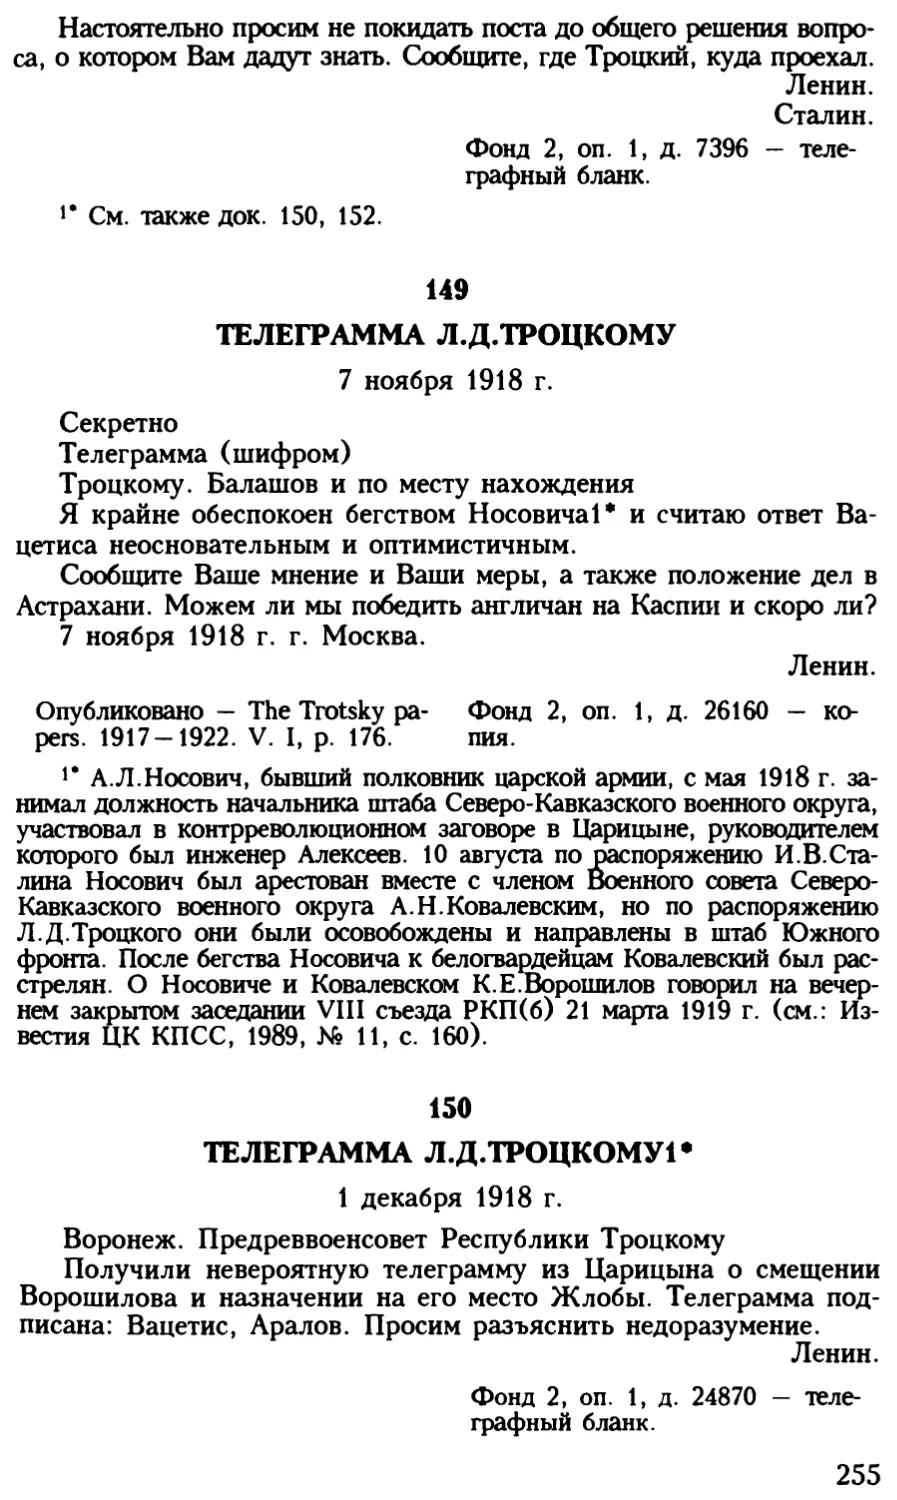 150. Телеграмма Л.Д.Троцкому. 1 декабря 1918 г